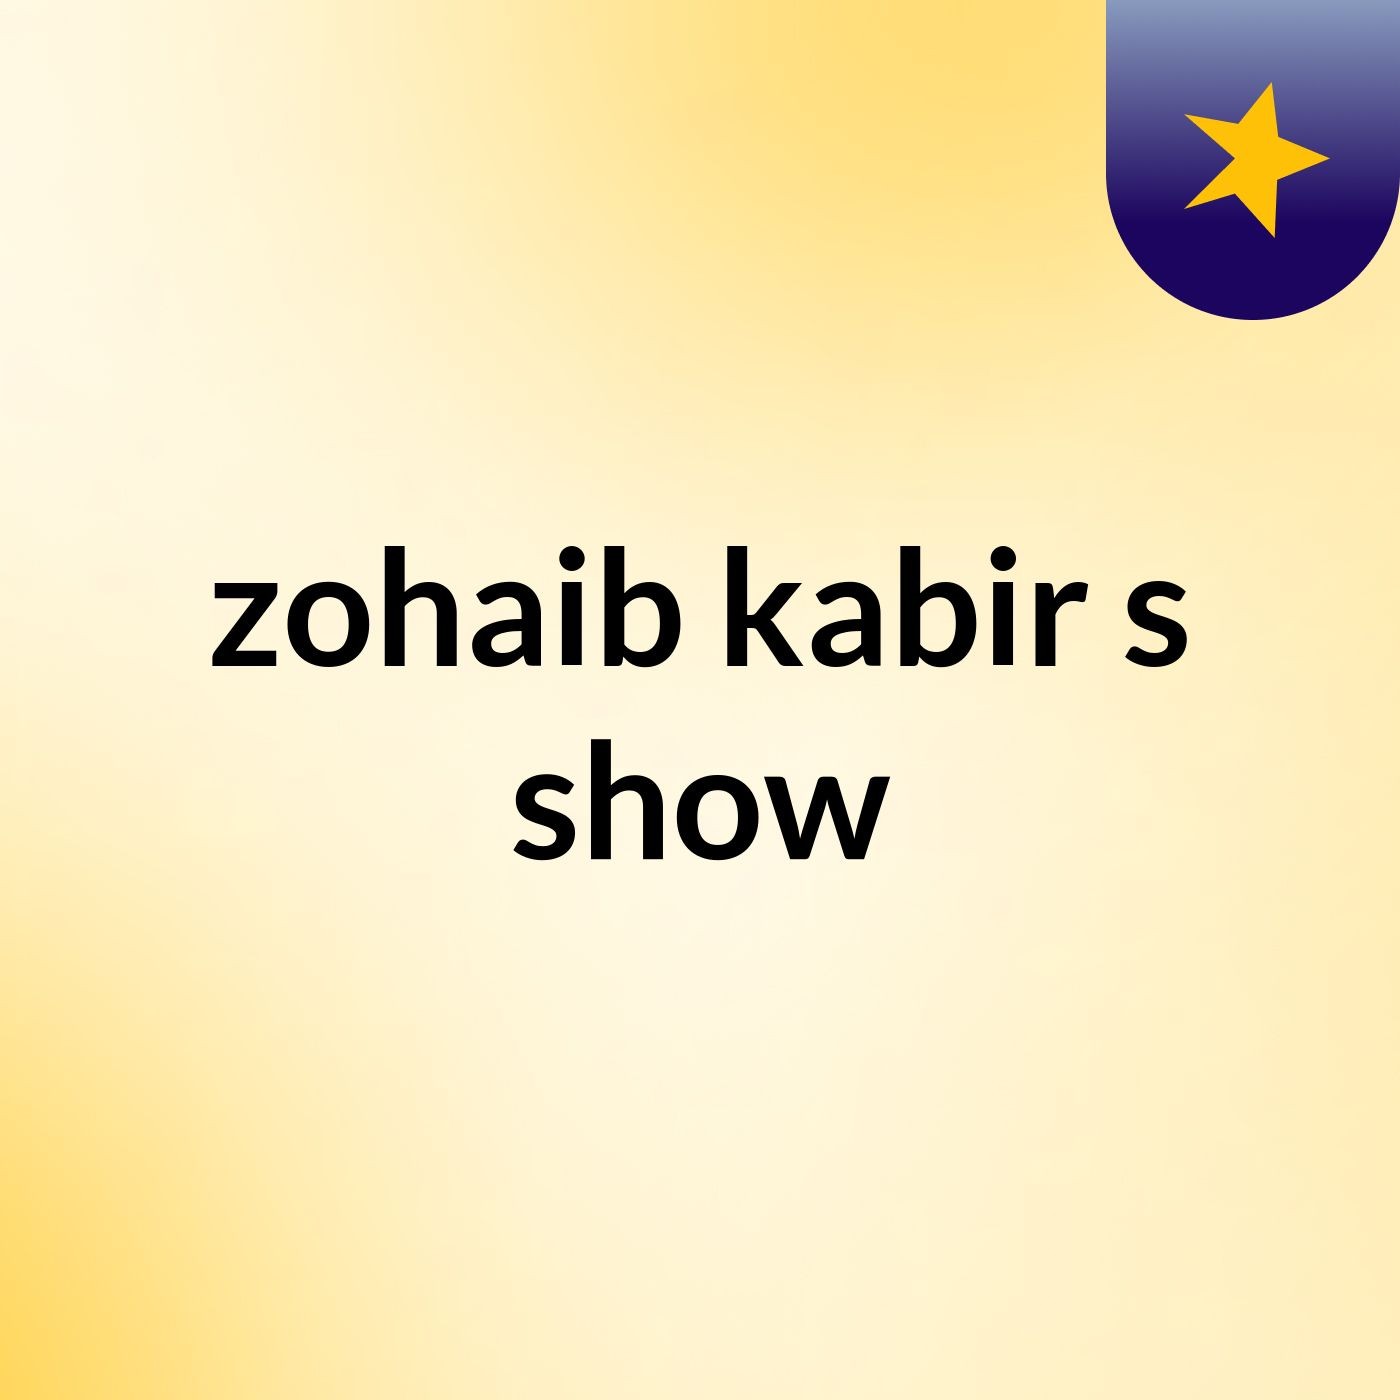 Episode 3 - zohaib kabir's show